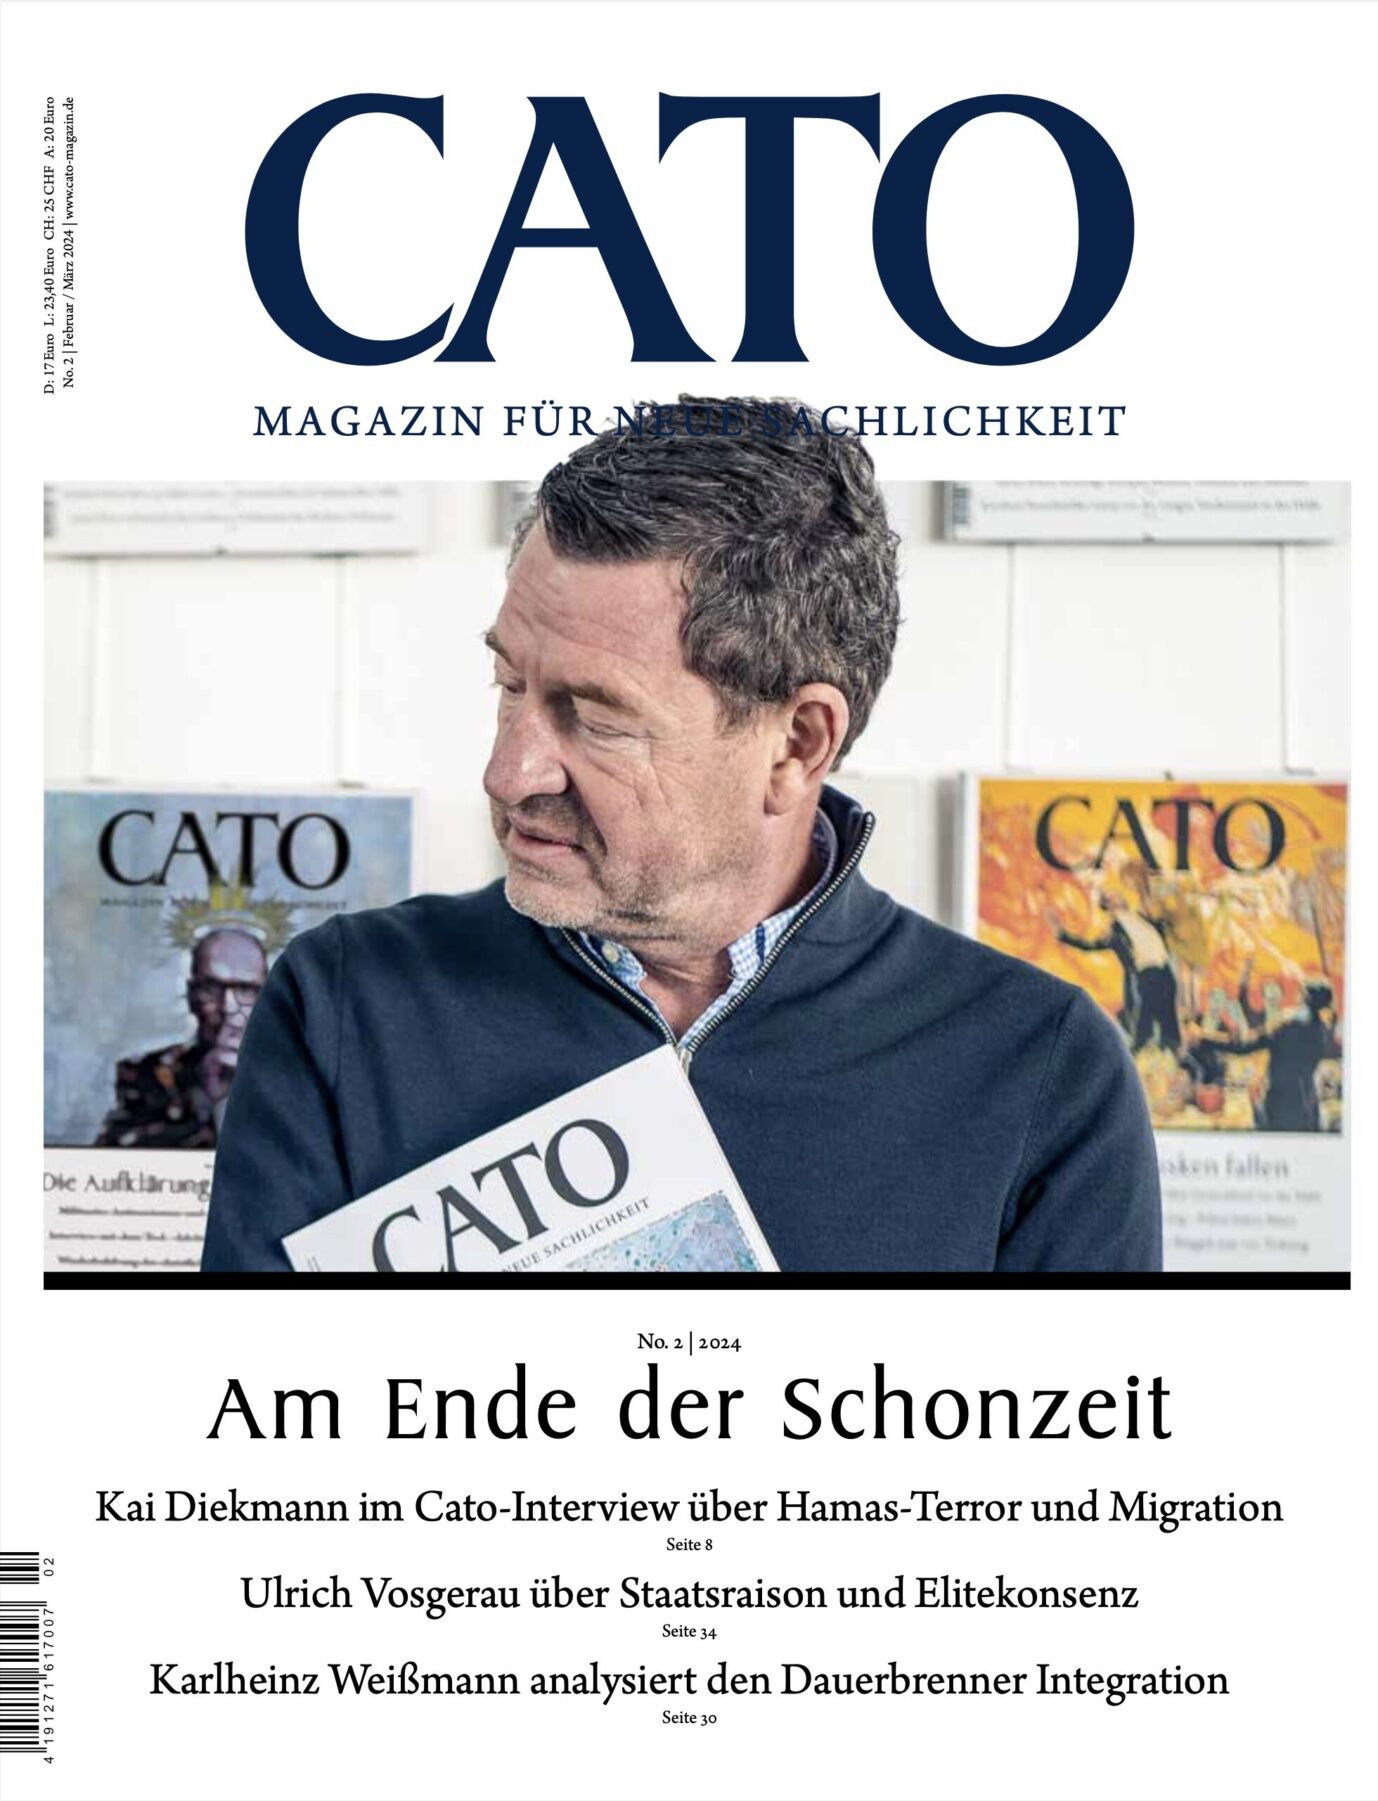 Aktuelles Cover des Magazin Cato. Es ist ein Magazin für neue Sachlichkeit. Hier steht rechts der Ex-Bild-Chef Kai Diekmann und guckt auf den Cato-Chefredakteur Ingo Langner.